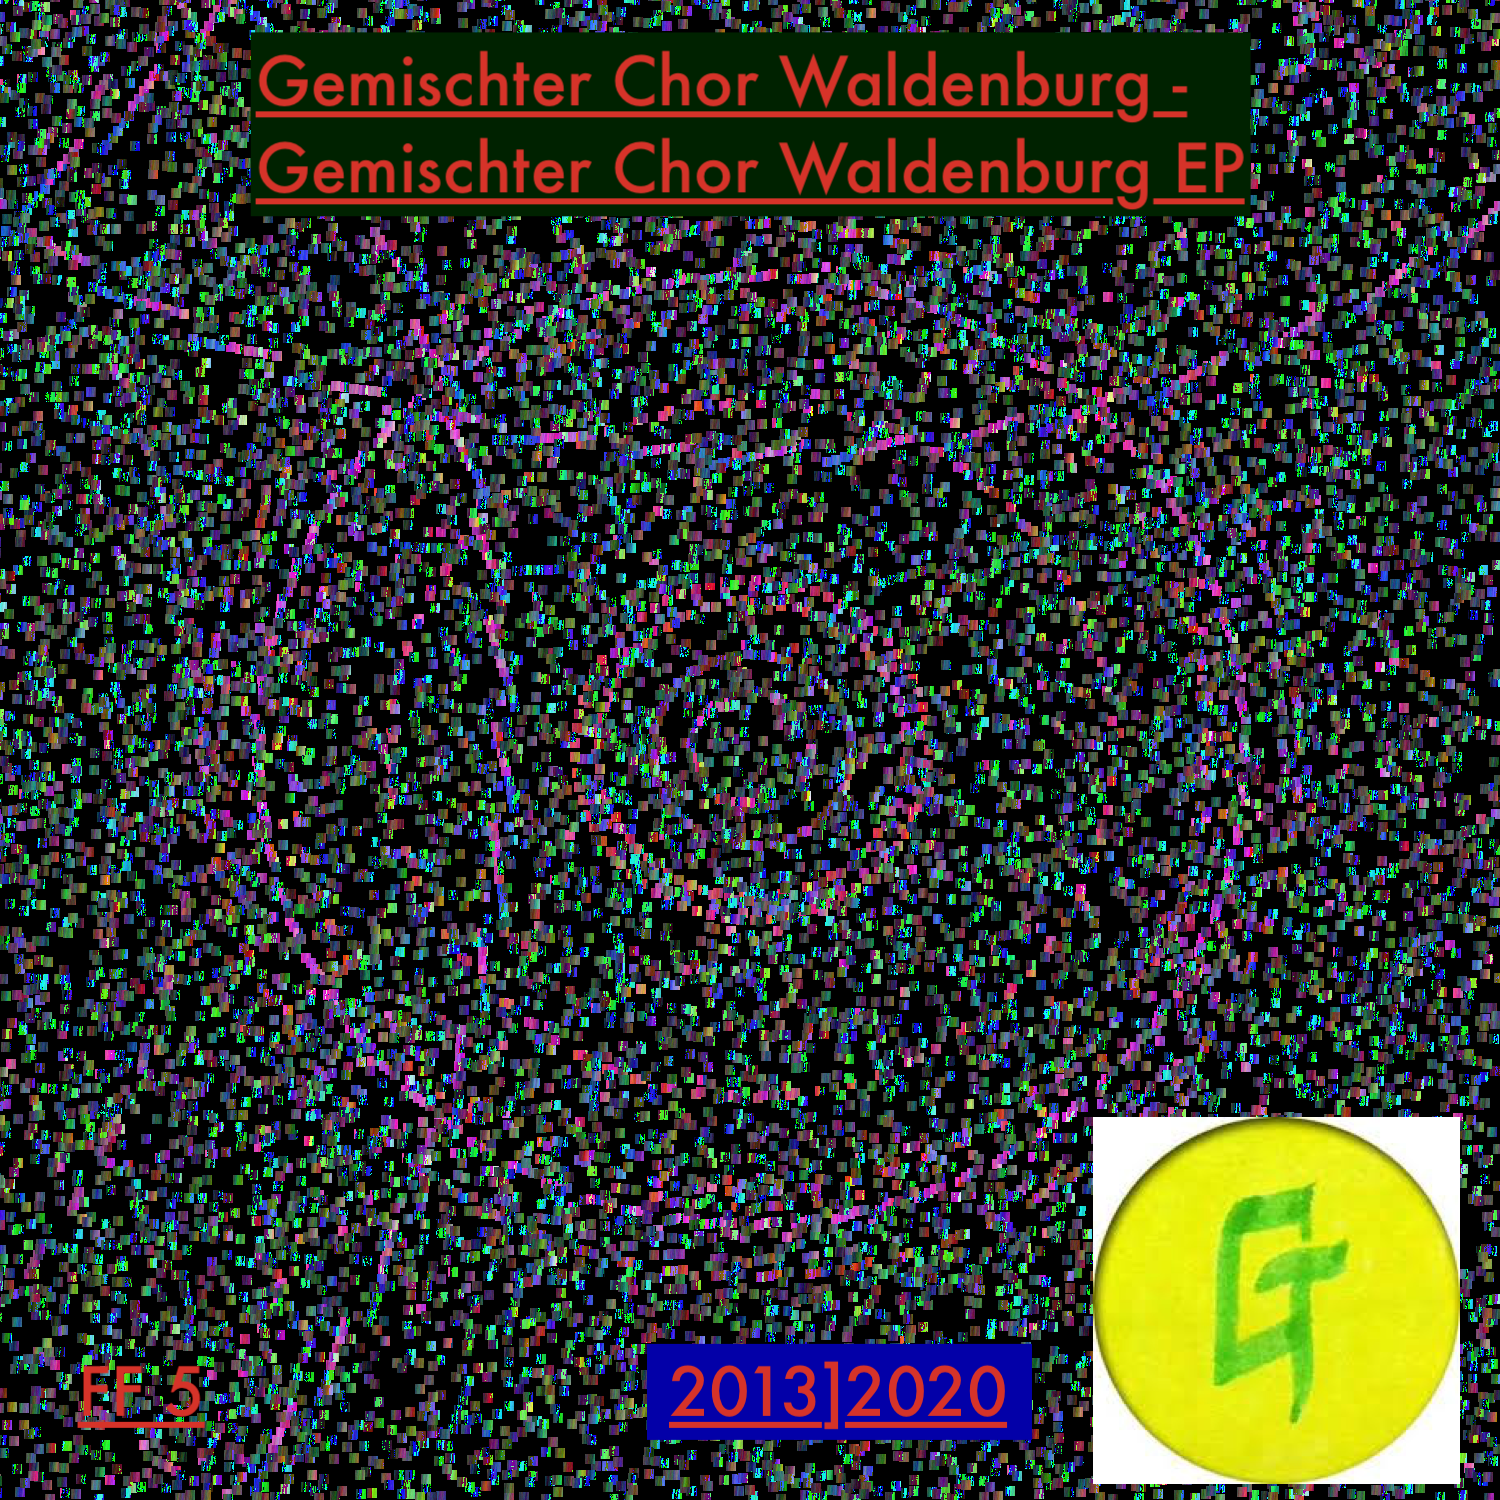 Gemischter Chor Waldenburg – Gemischter Chor Waldenburg EP